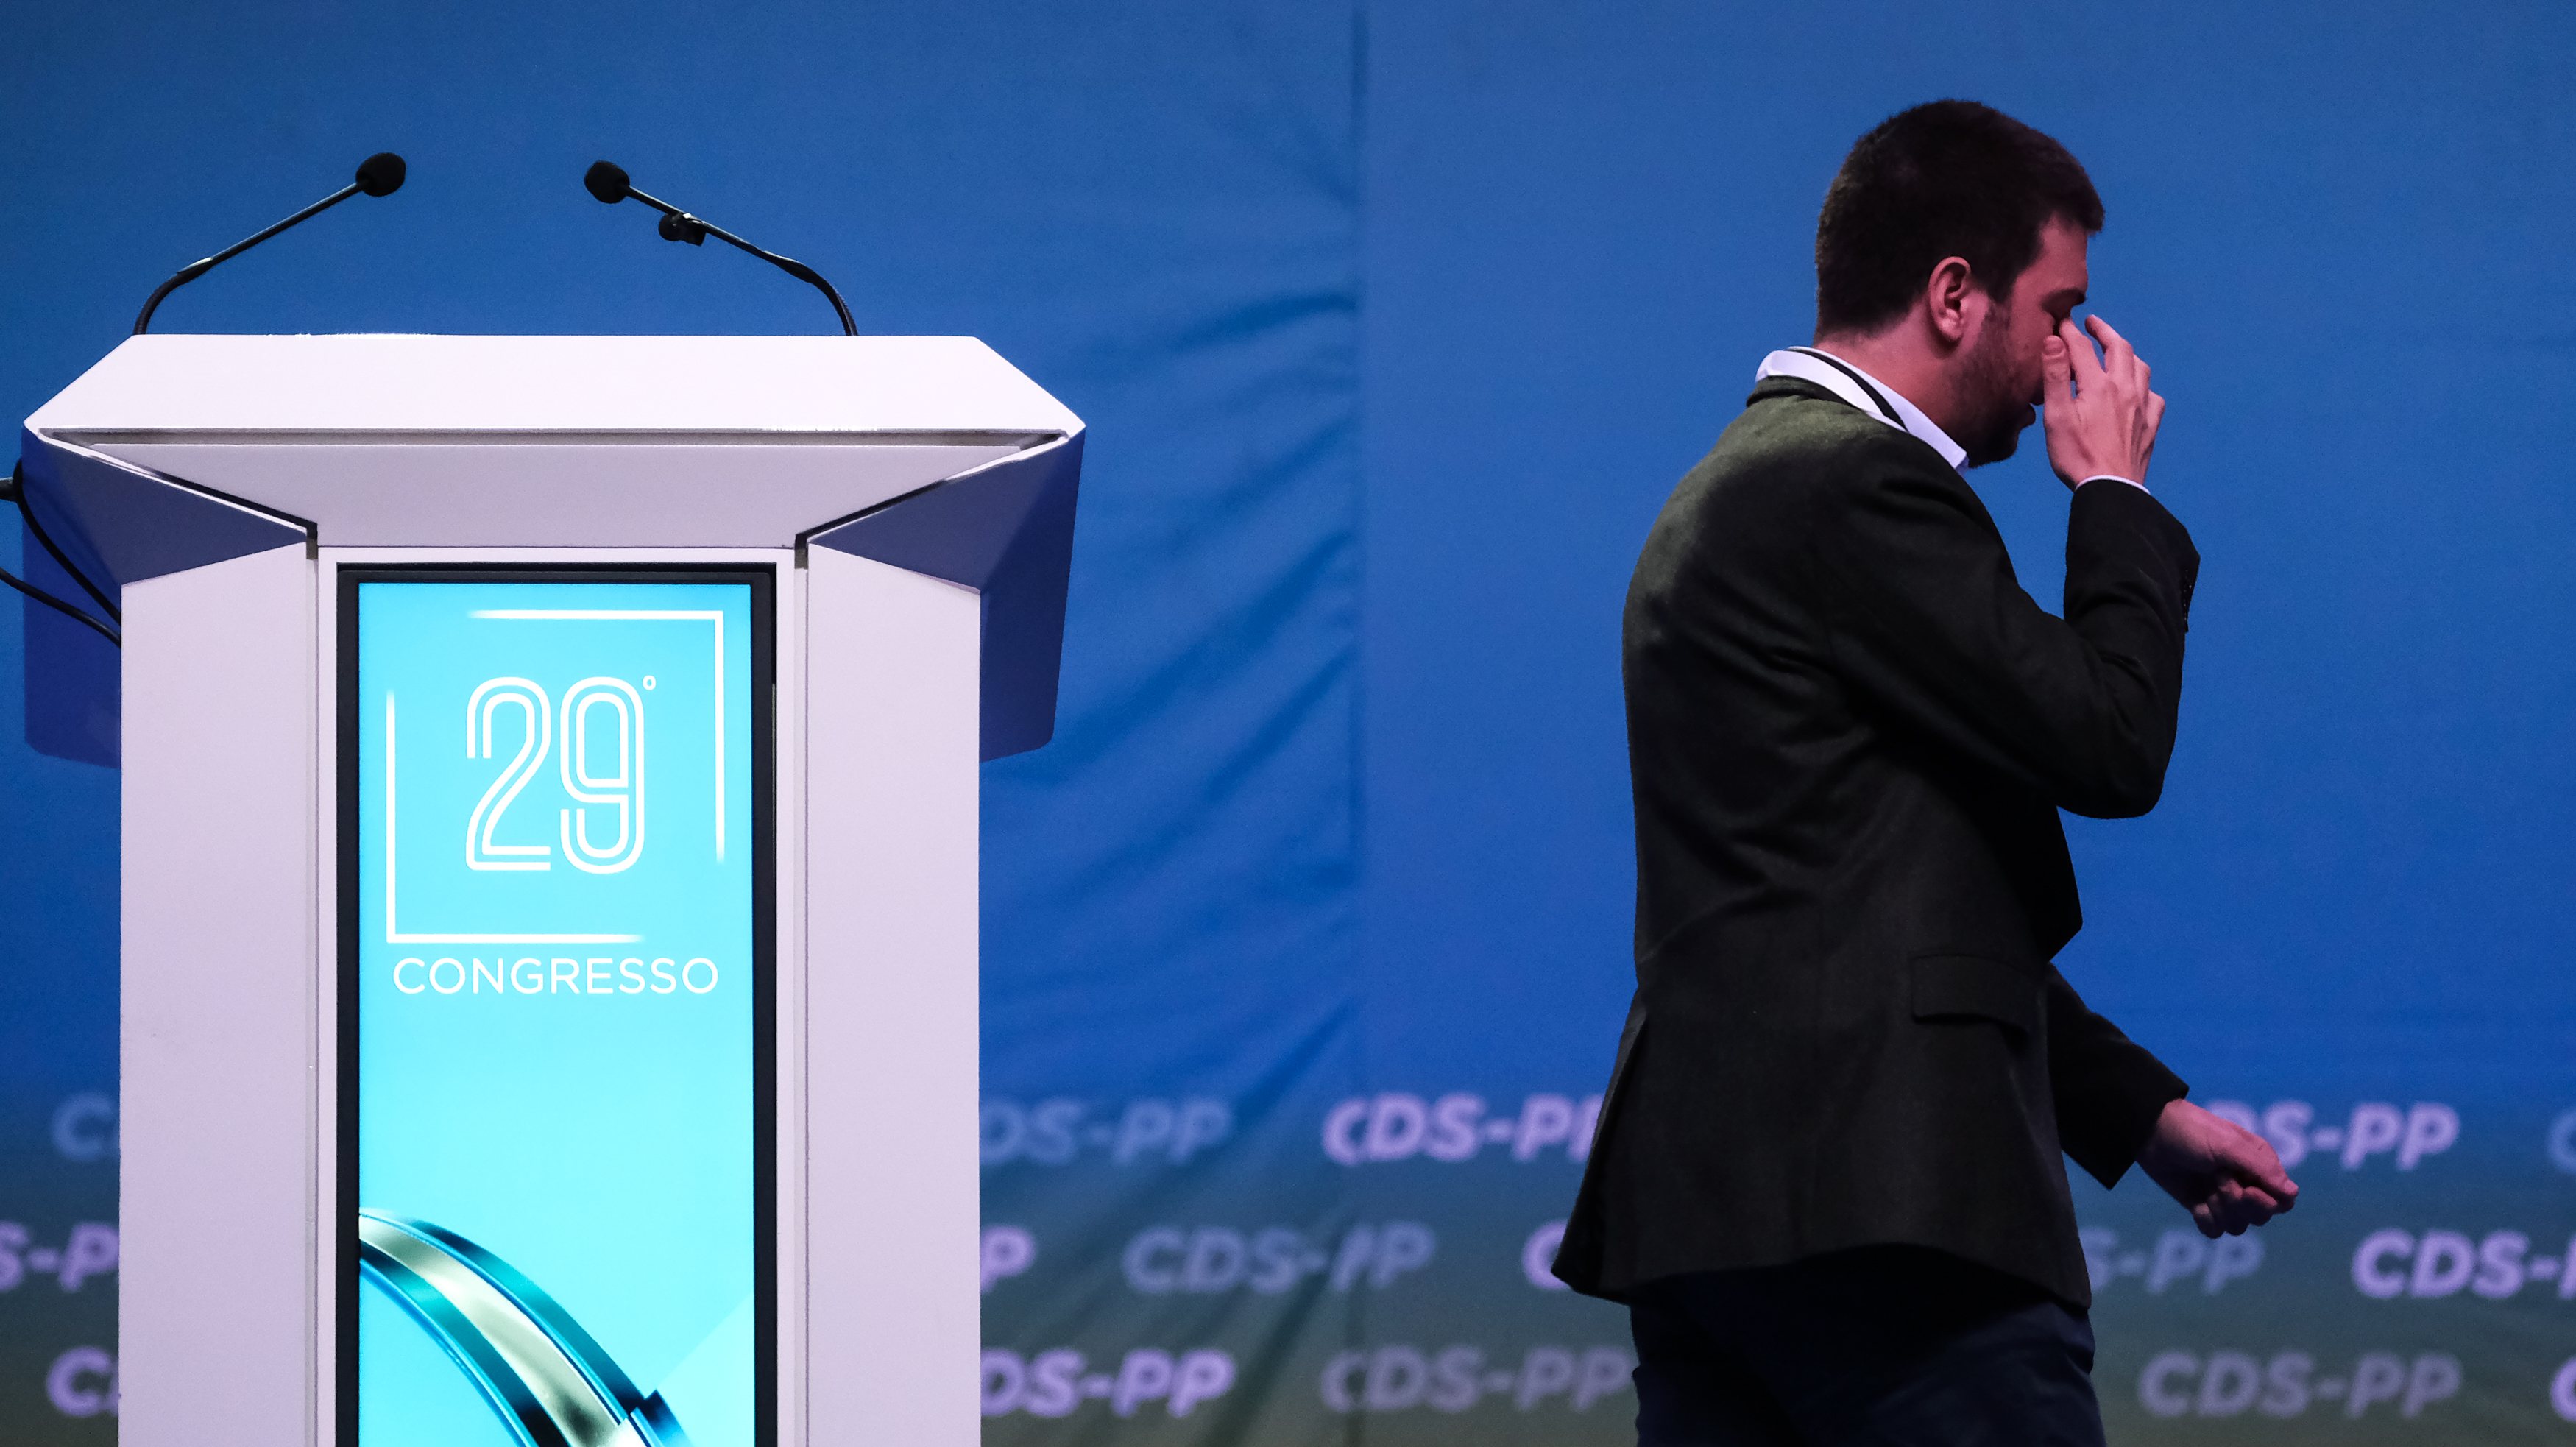 Francisco Rodrigues dos Santos falou pela última vez na condição de líder do CDS-PP